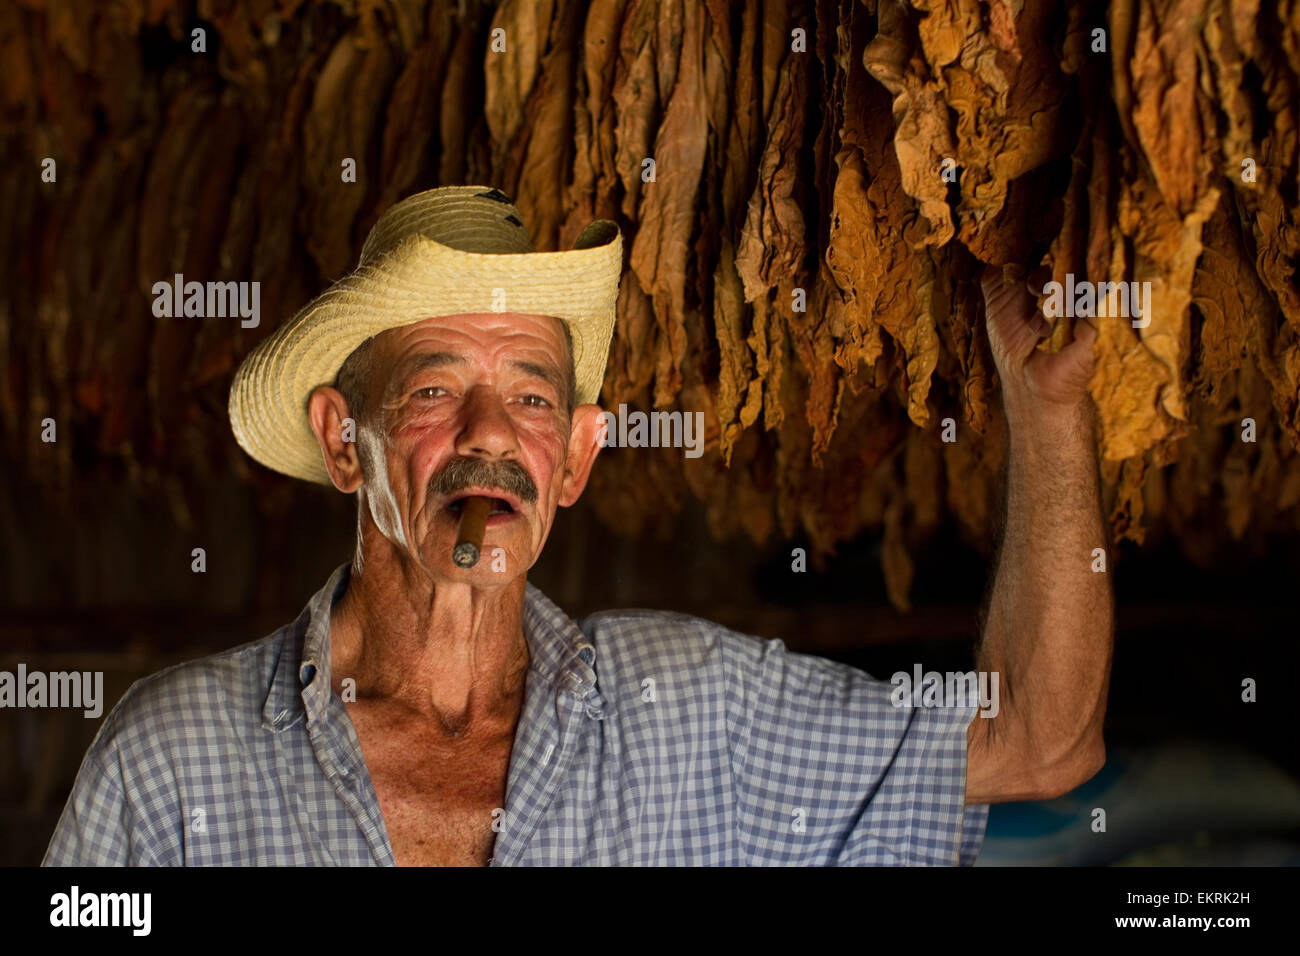 Un cultivateur de tabac dans sa grange dans la région de Vinales, Cuba Banque D'Images